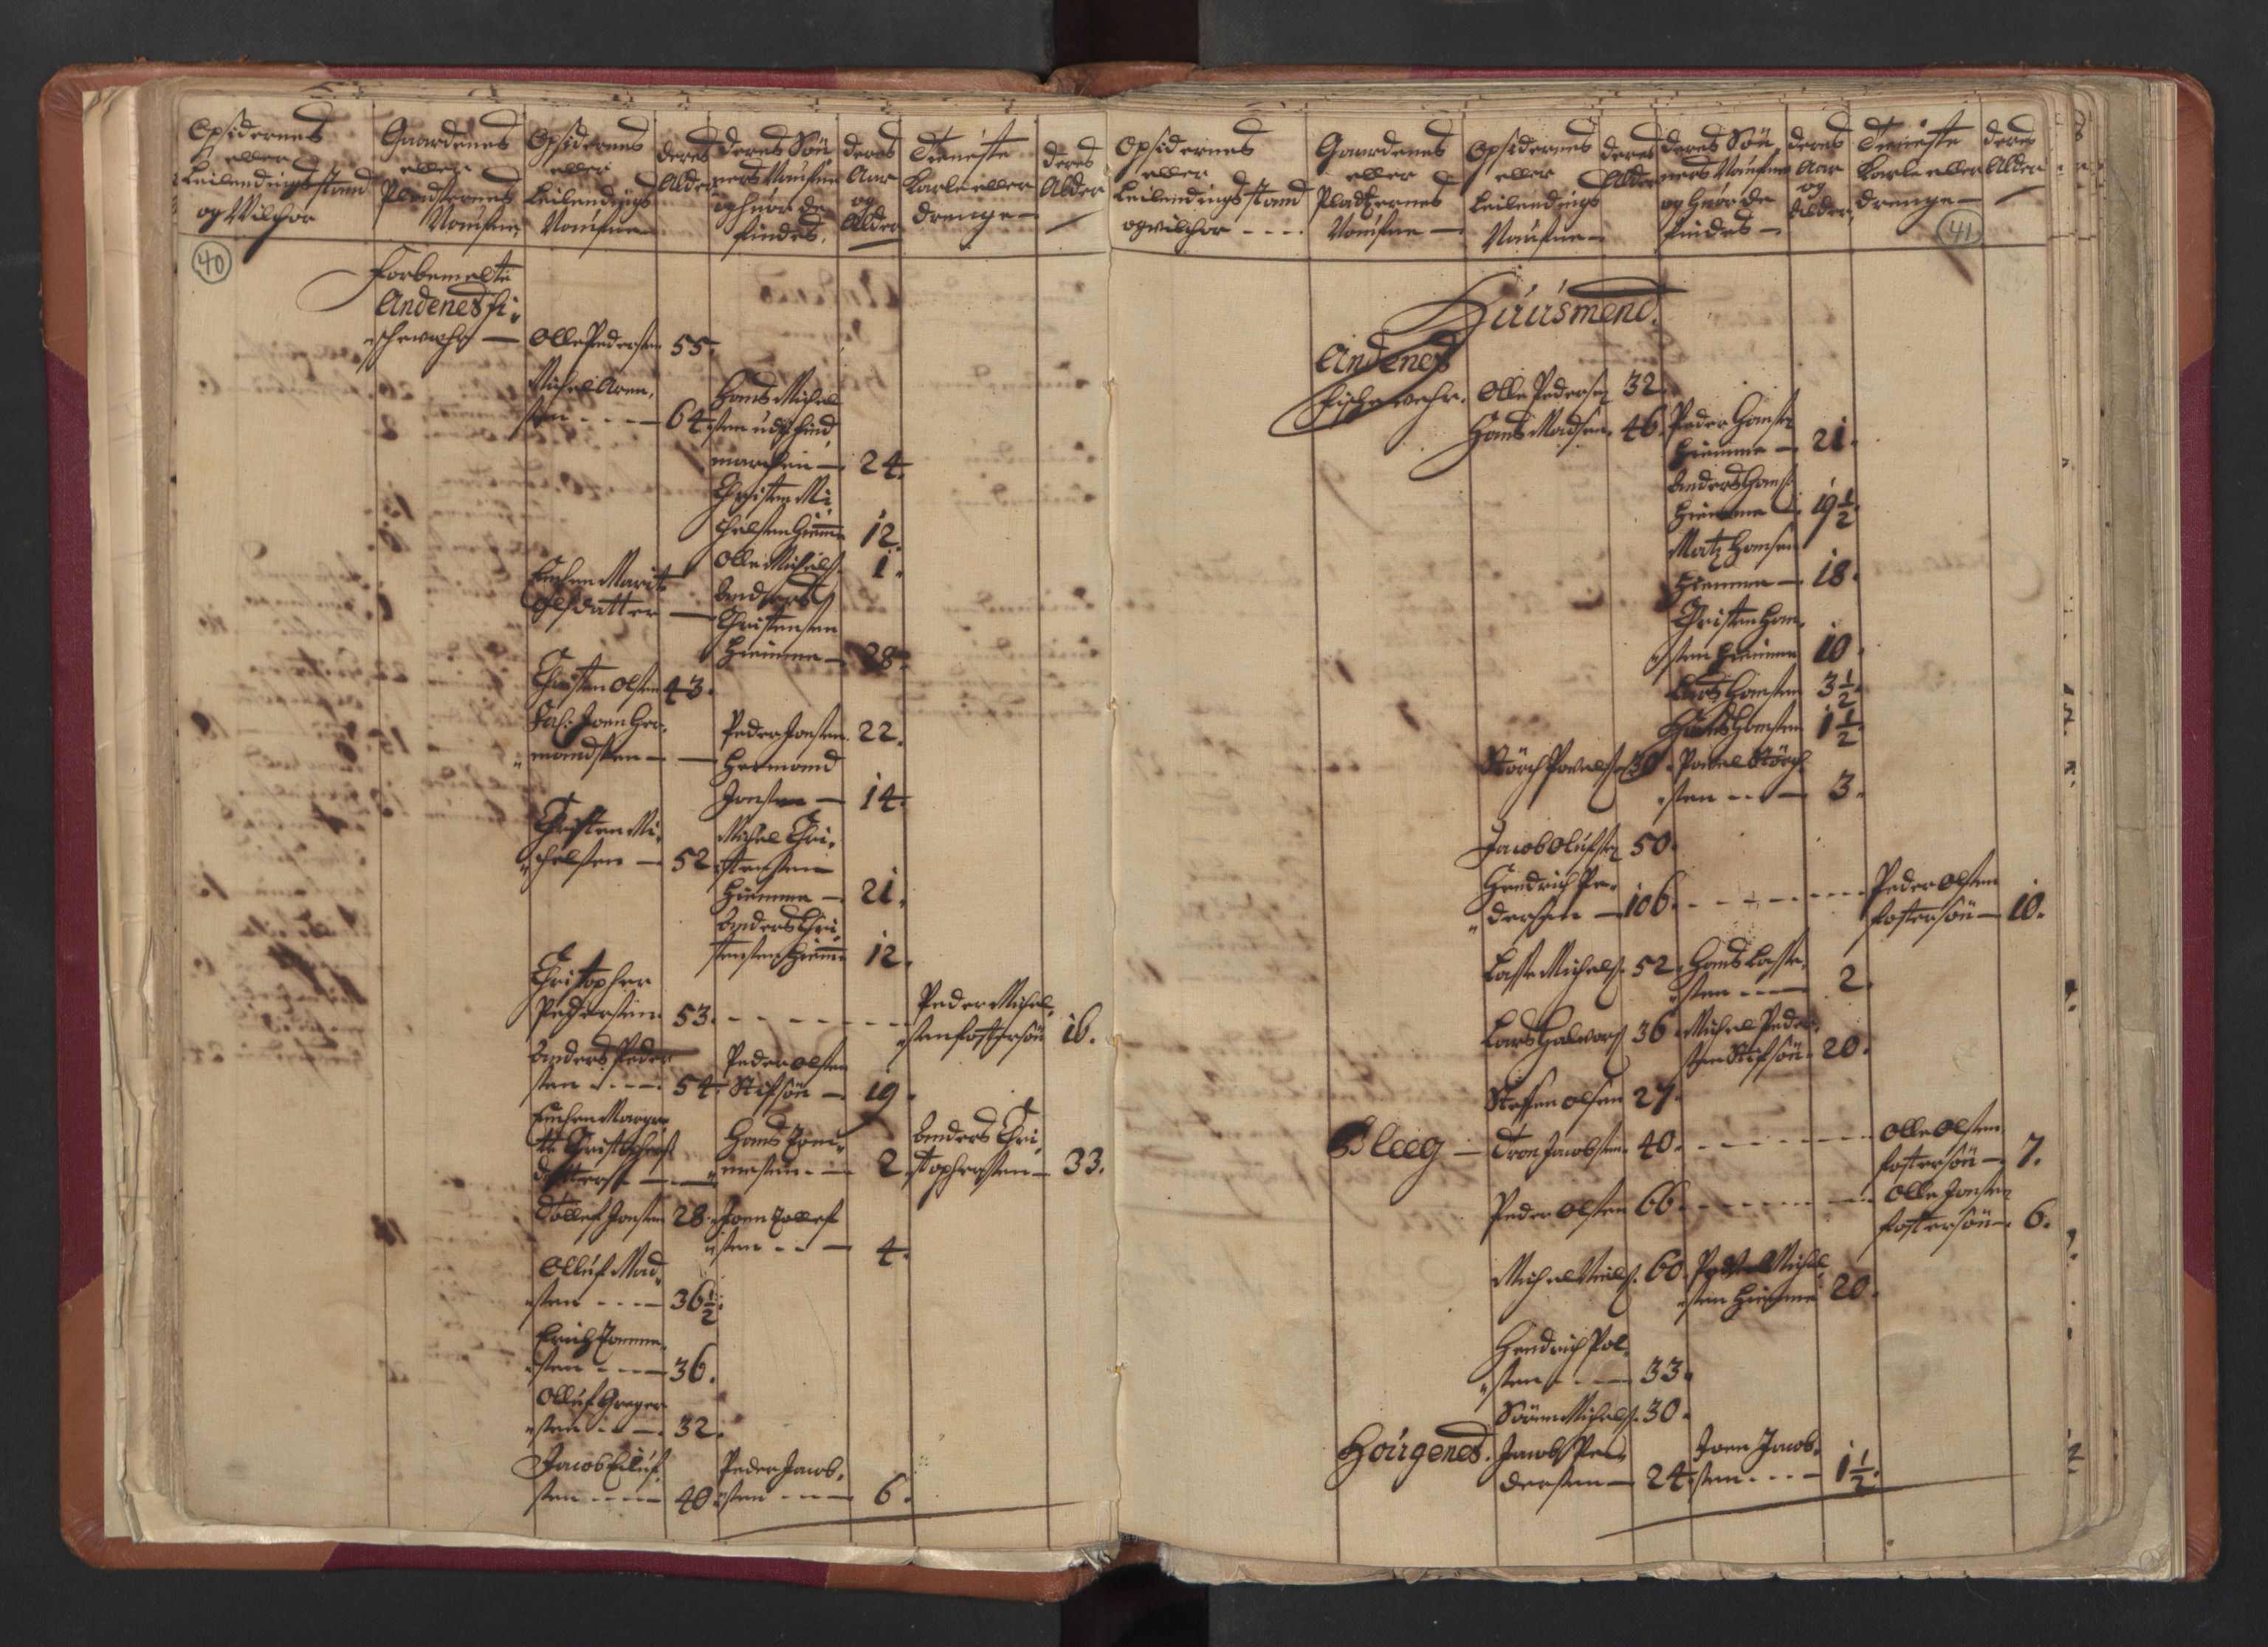 RA, Census (manntall) 1701, no. 18: Vesterålen, Andenes and Lofoten fogderi, 1701, p. 40-41